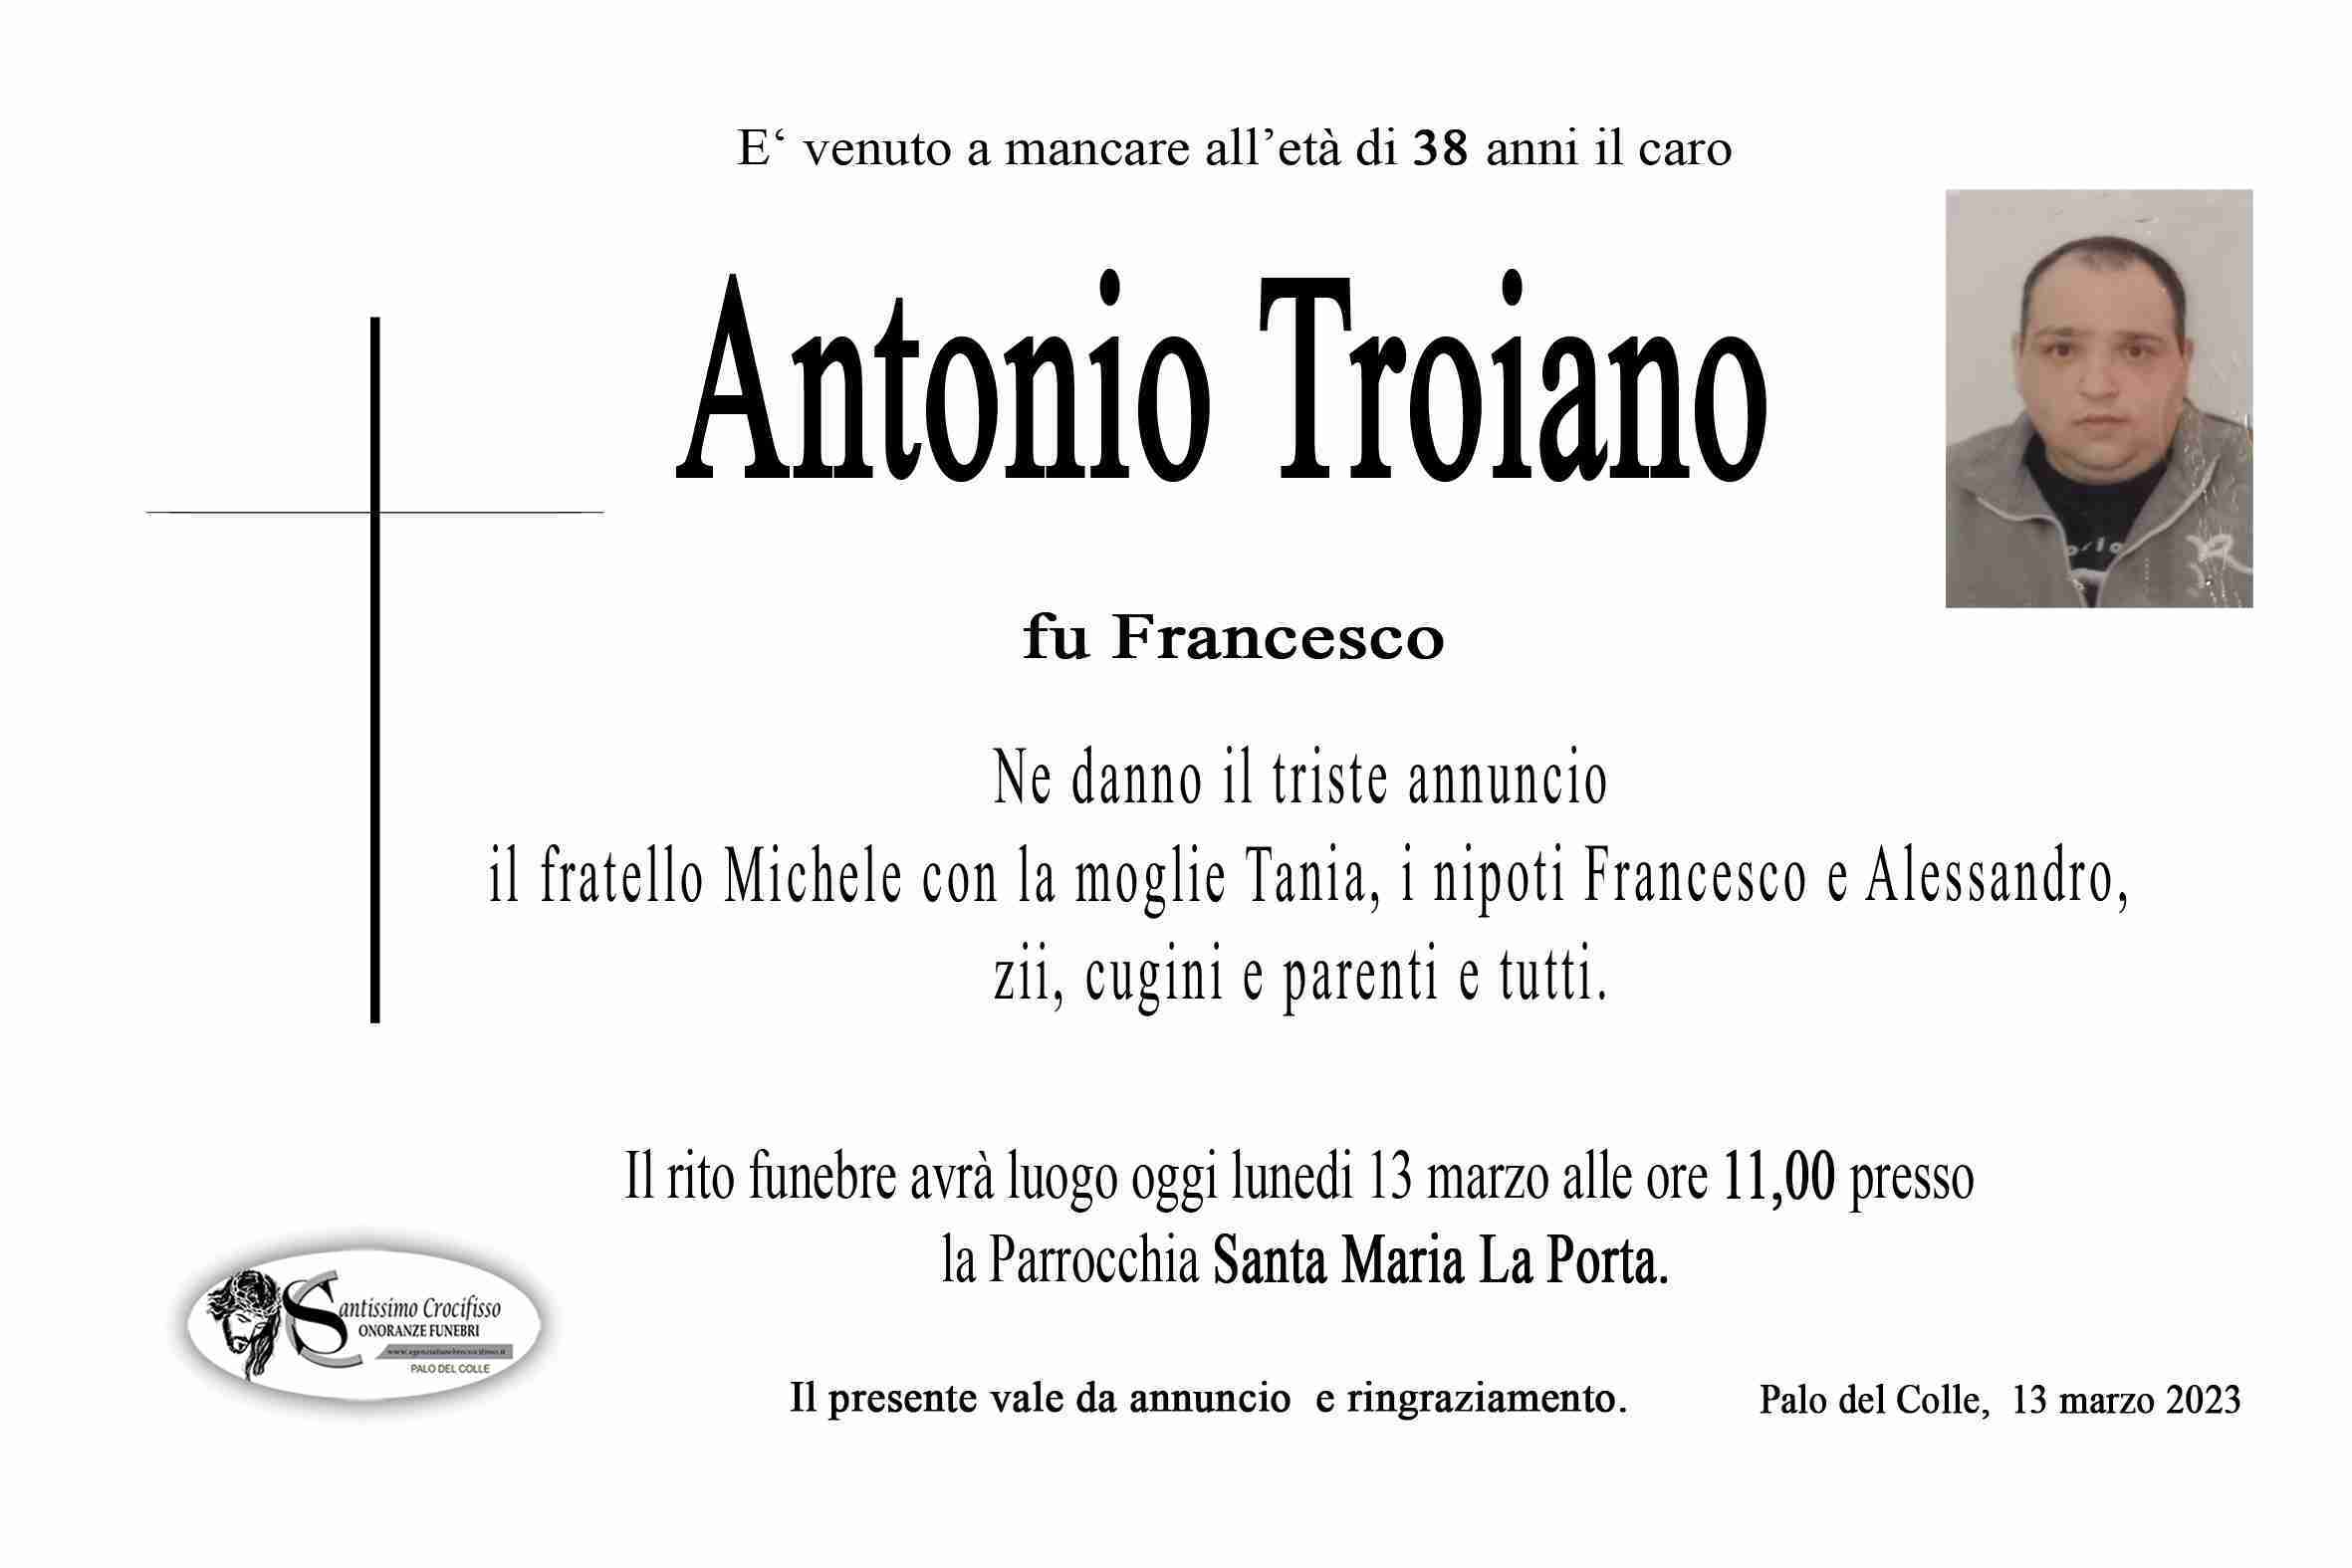 Antonio Troiano